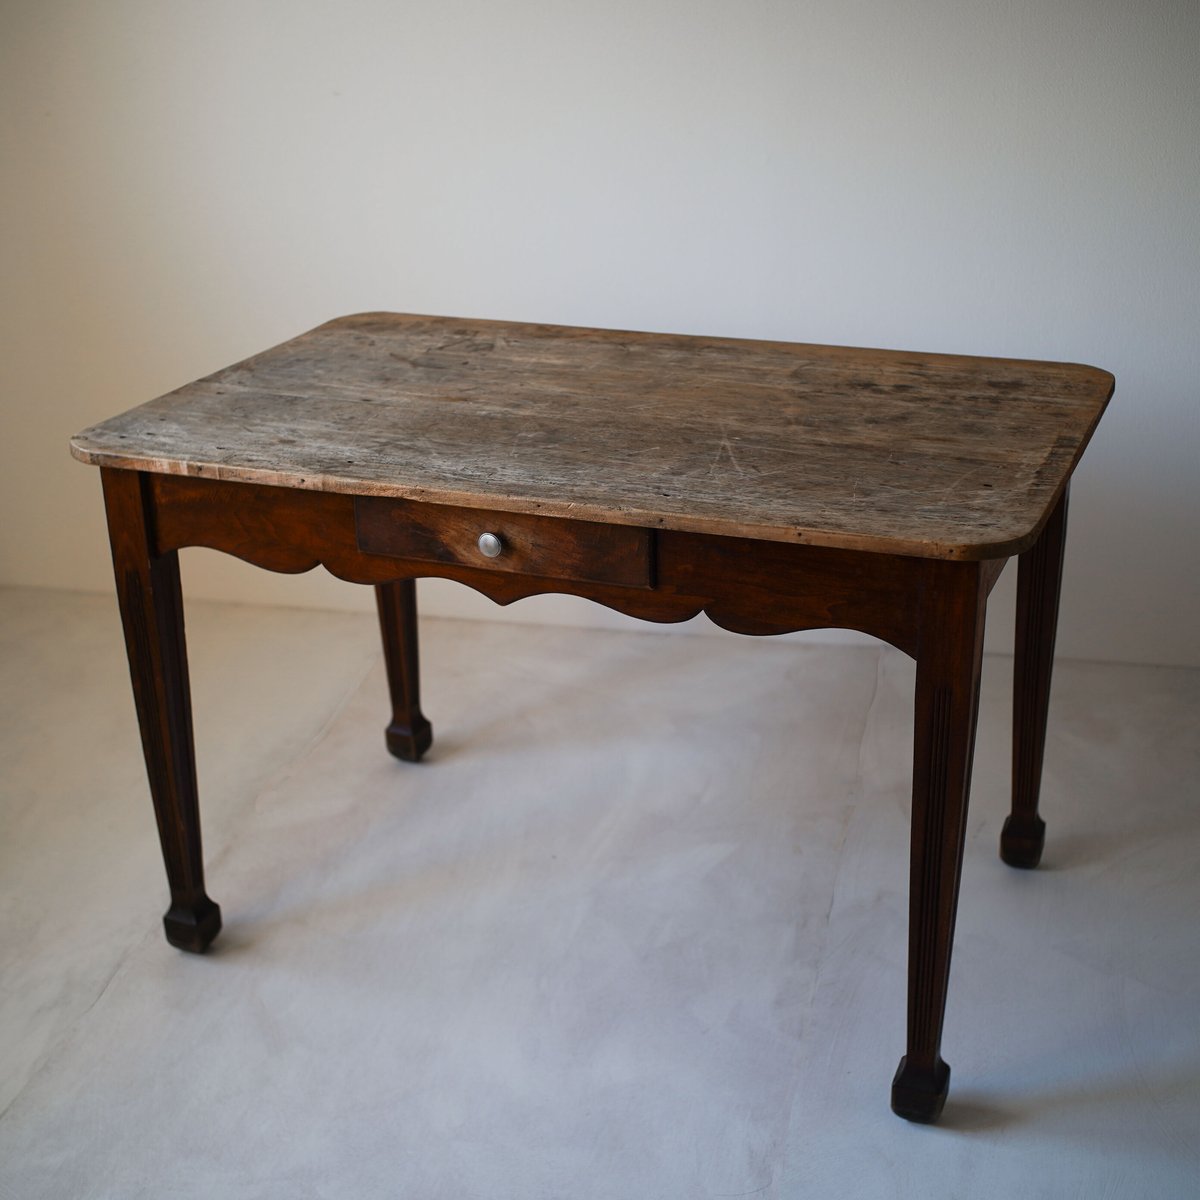 1800年代 フランス 農家で使われていた古い無垢材のファーマーズテーブル / Farmers Table / France 19th C.